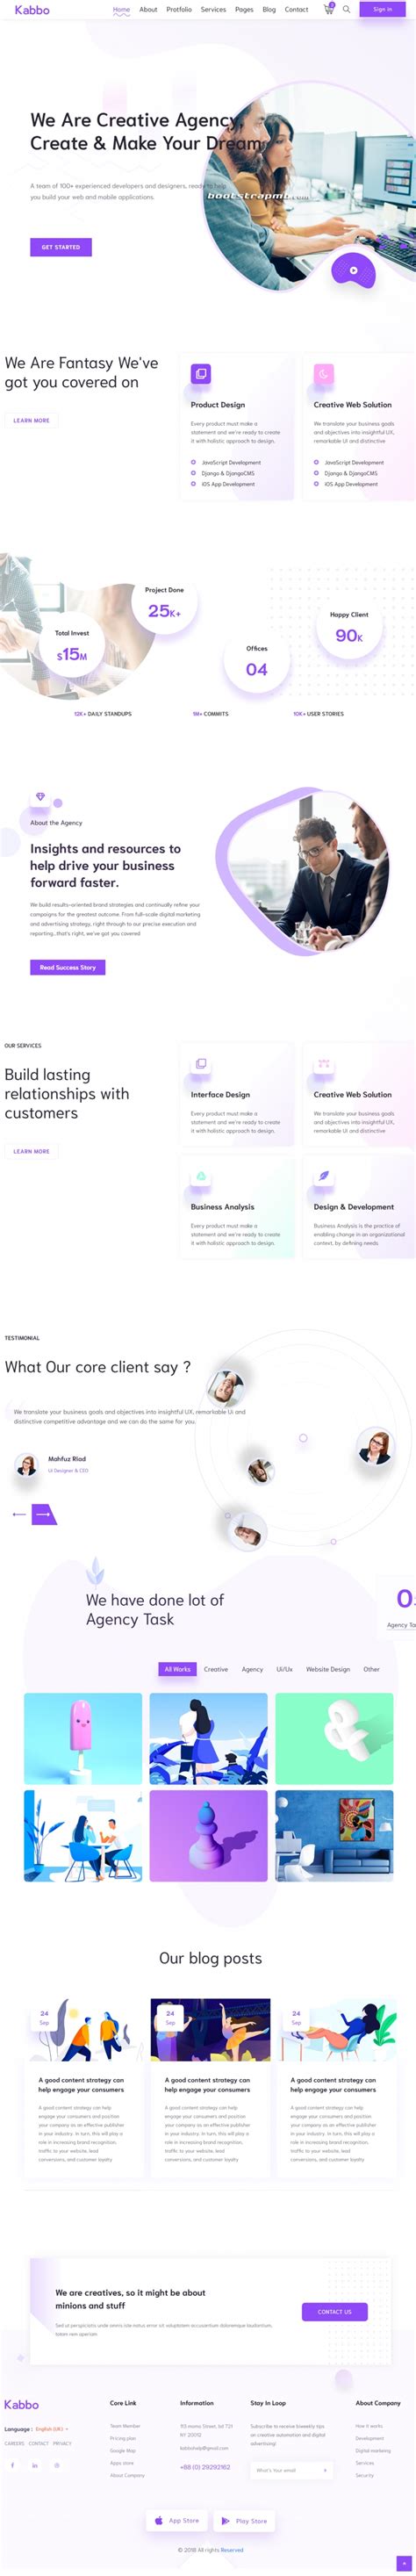 紫色简洁风格的创意设计公司企业网站源码下载